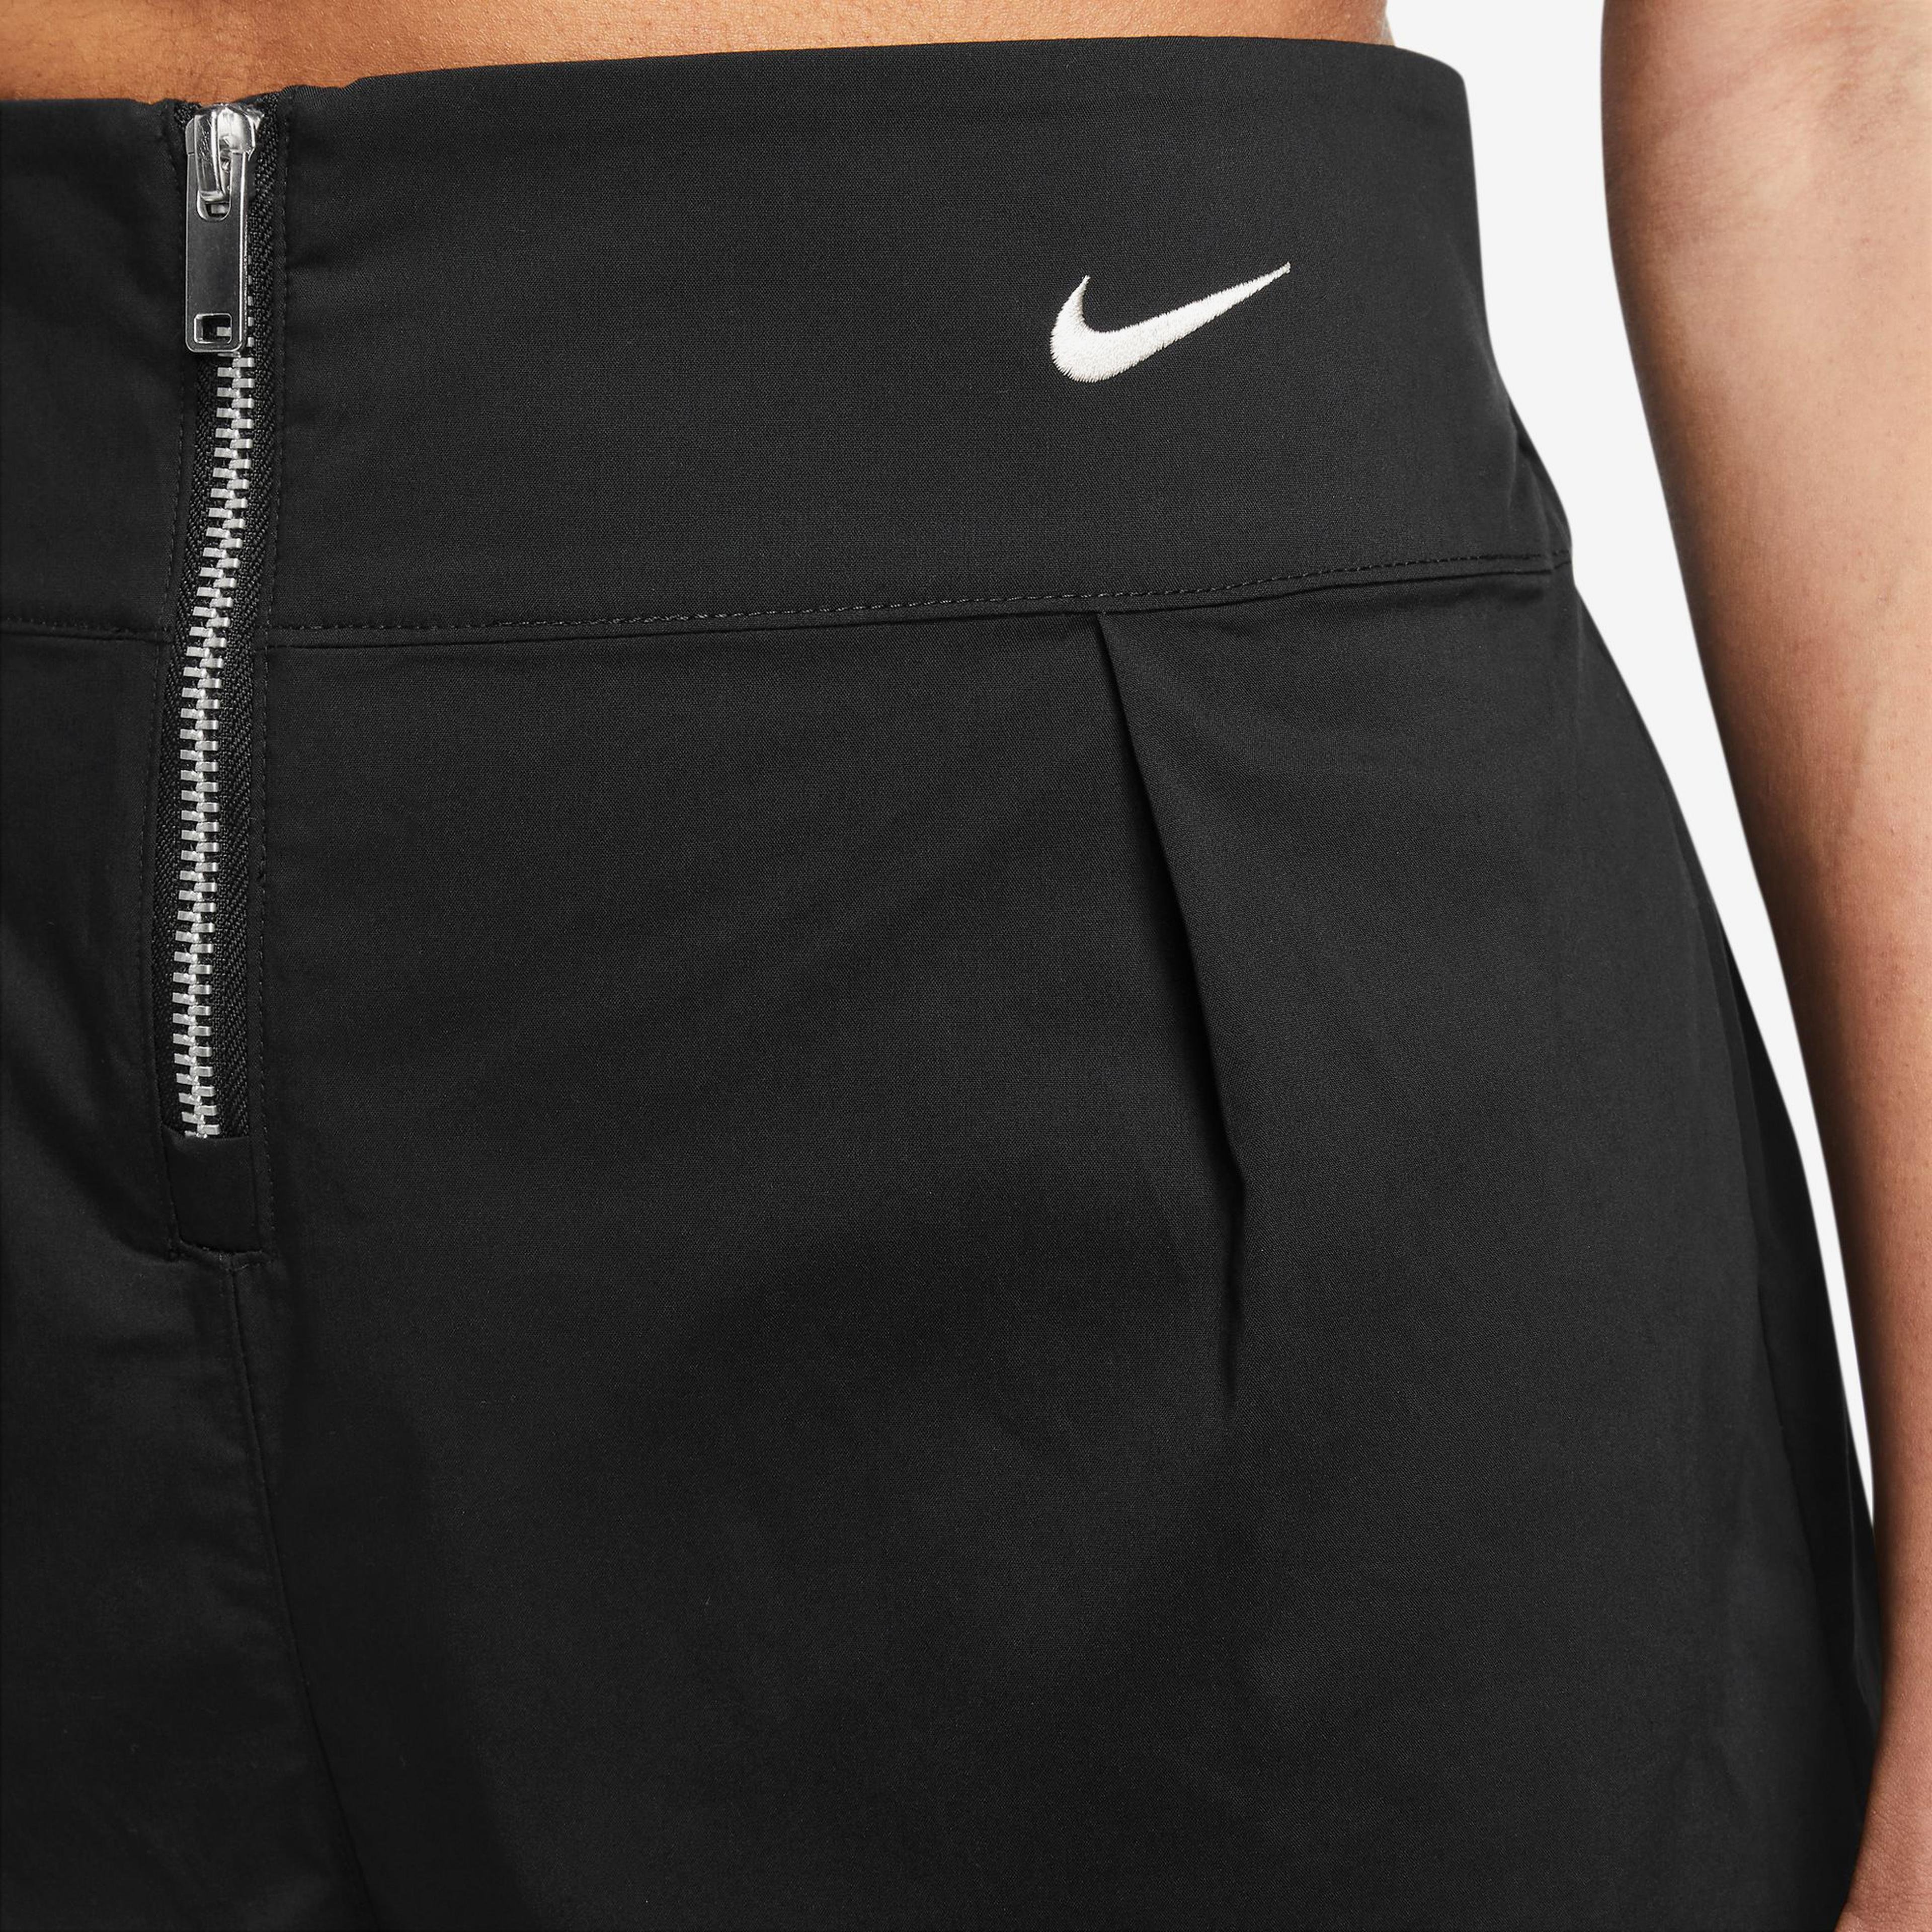 Nike Sportswear Trouser Kadın Siyah Şort